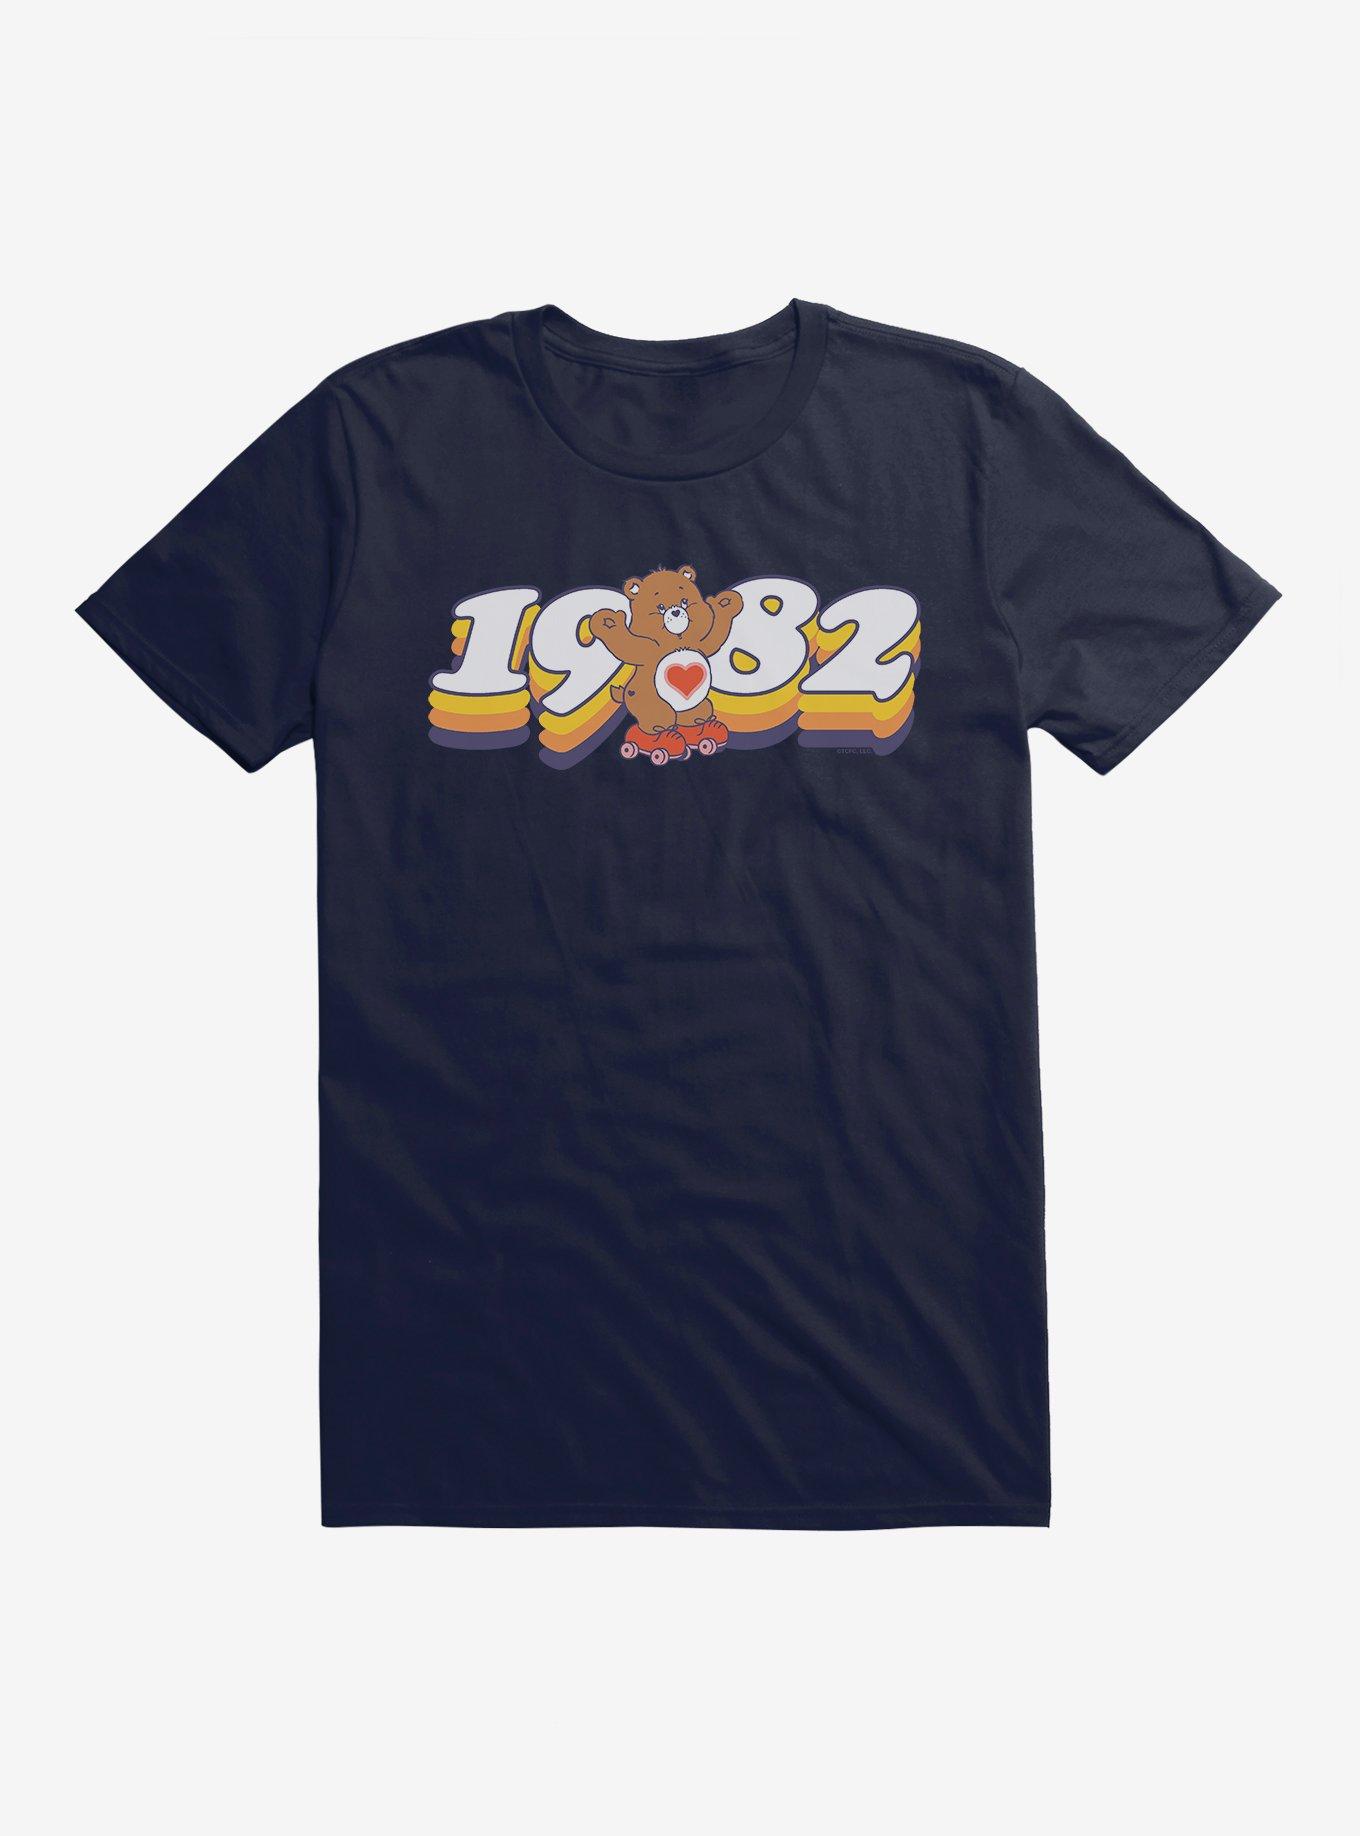 Care Bears Skating Since 1982 T-Shirt, NAVY, hi-res